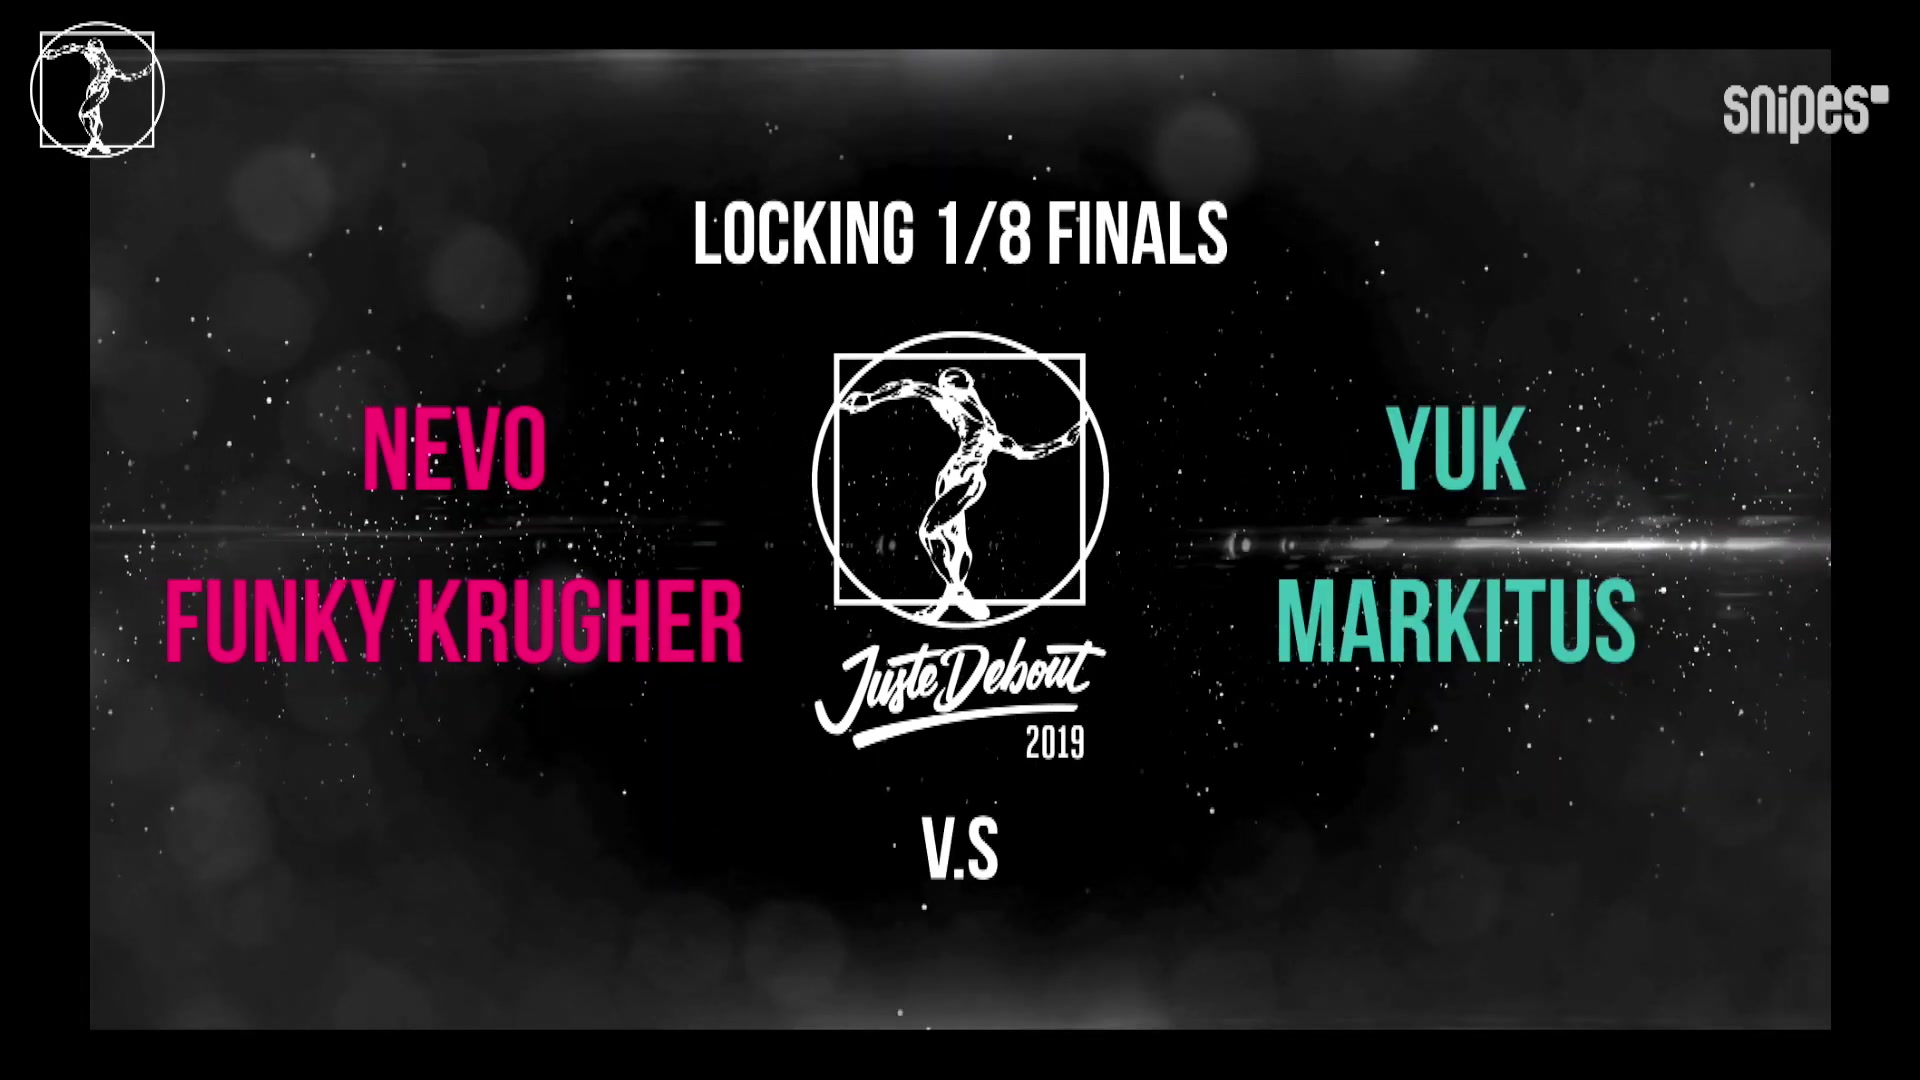 【Juste Debout 2019】 - Yuk & Markitus vs Nevo & Funky Krugher